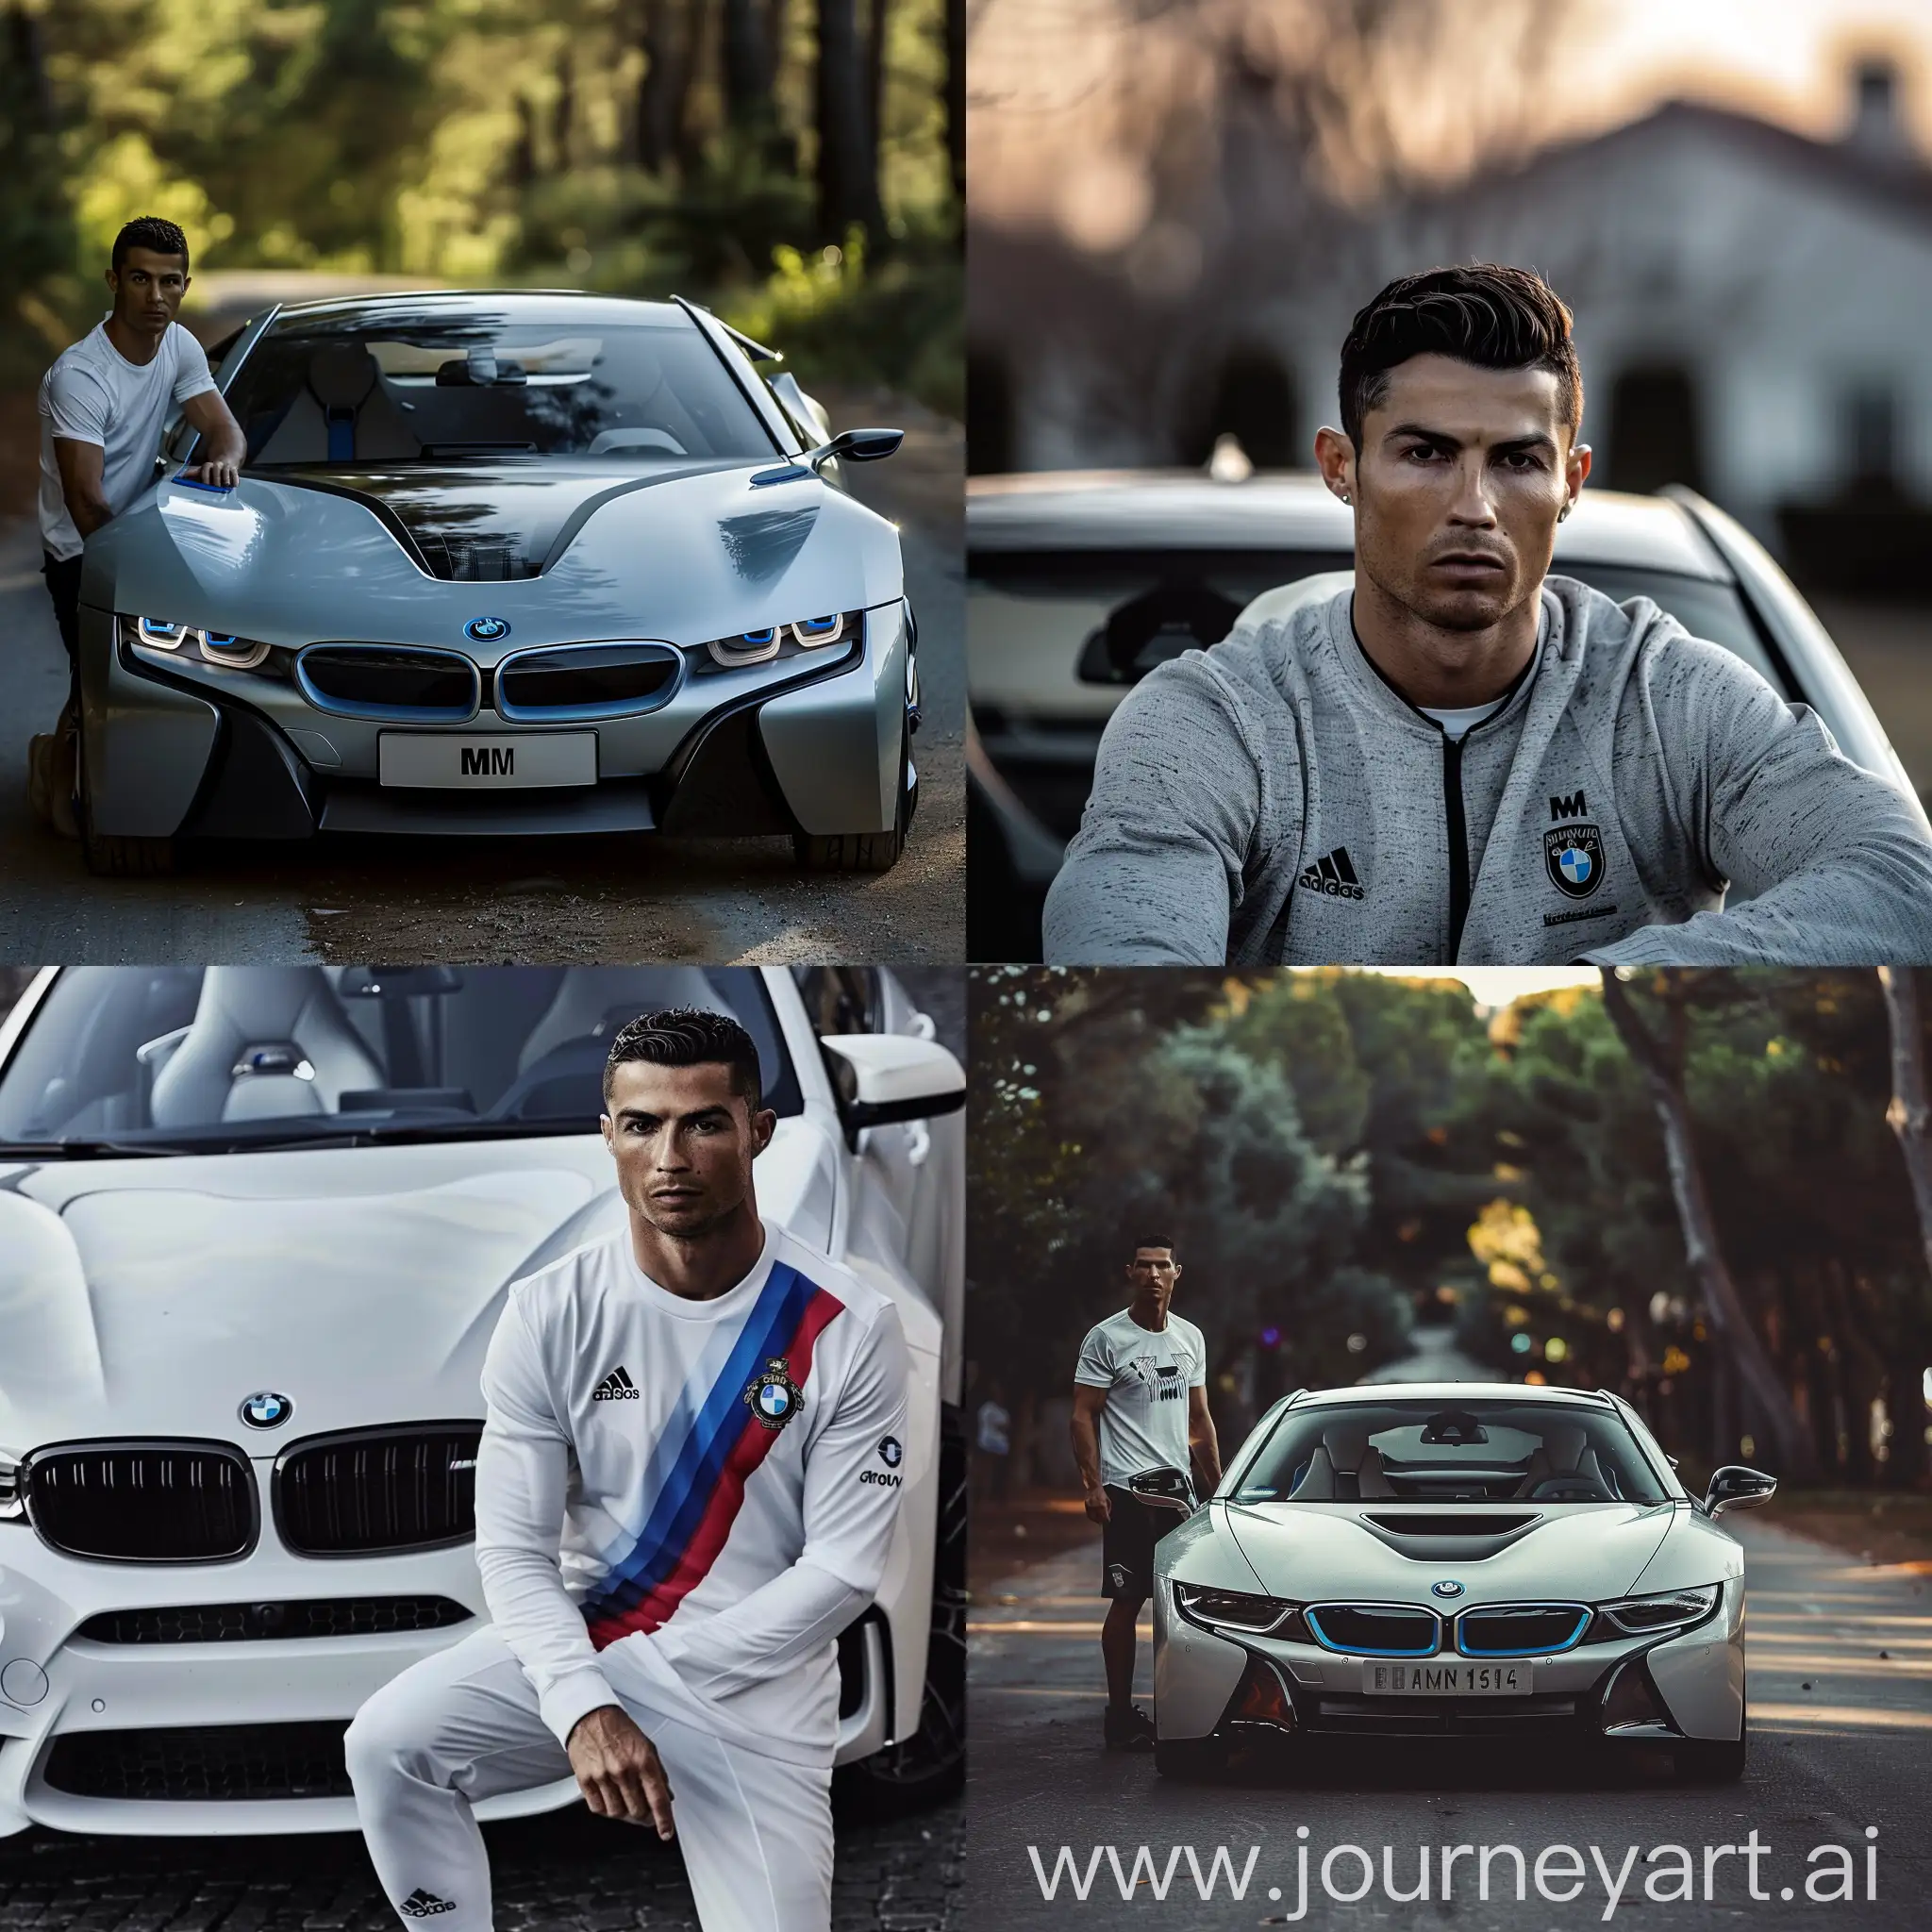 Cristiano-Ronaldos-BMW-V6-High-Performance-Luxury-Car-Closeup